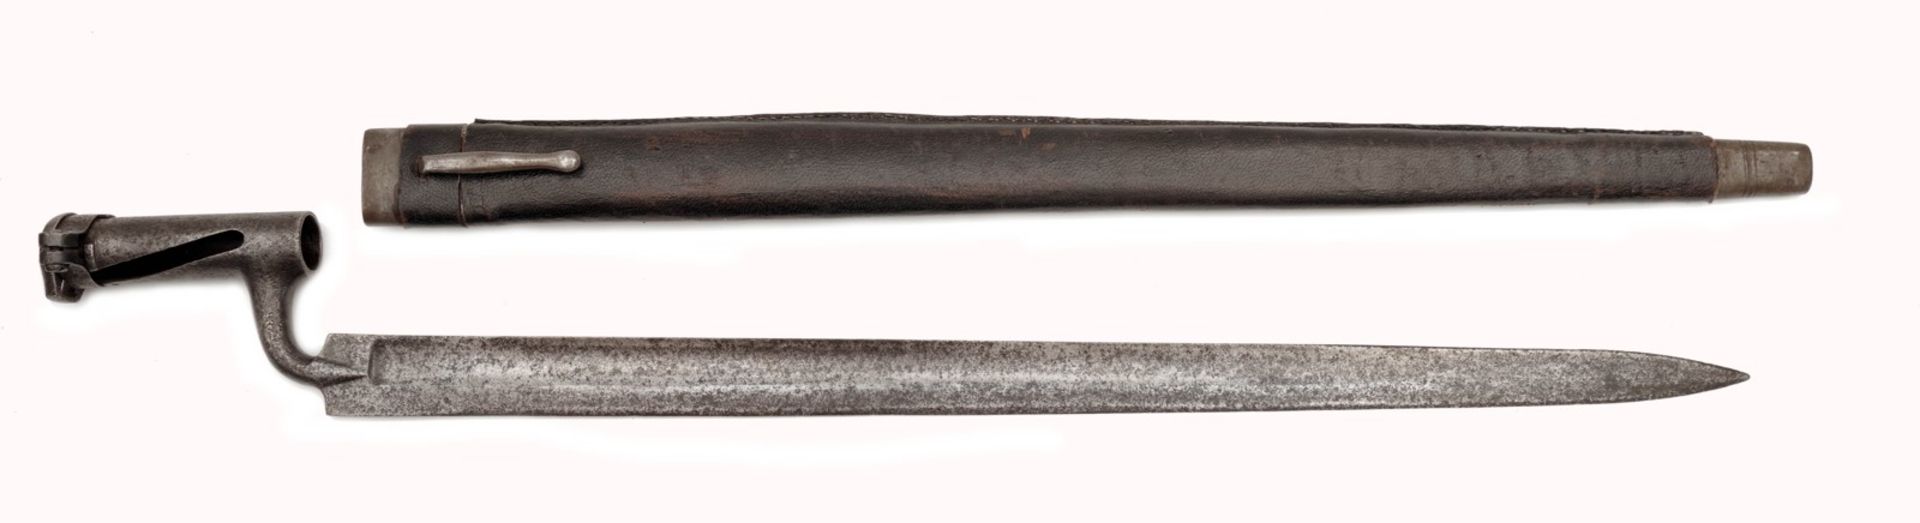 An Austrian Jager Socket Bayonet — M 1854